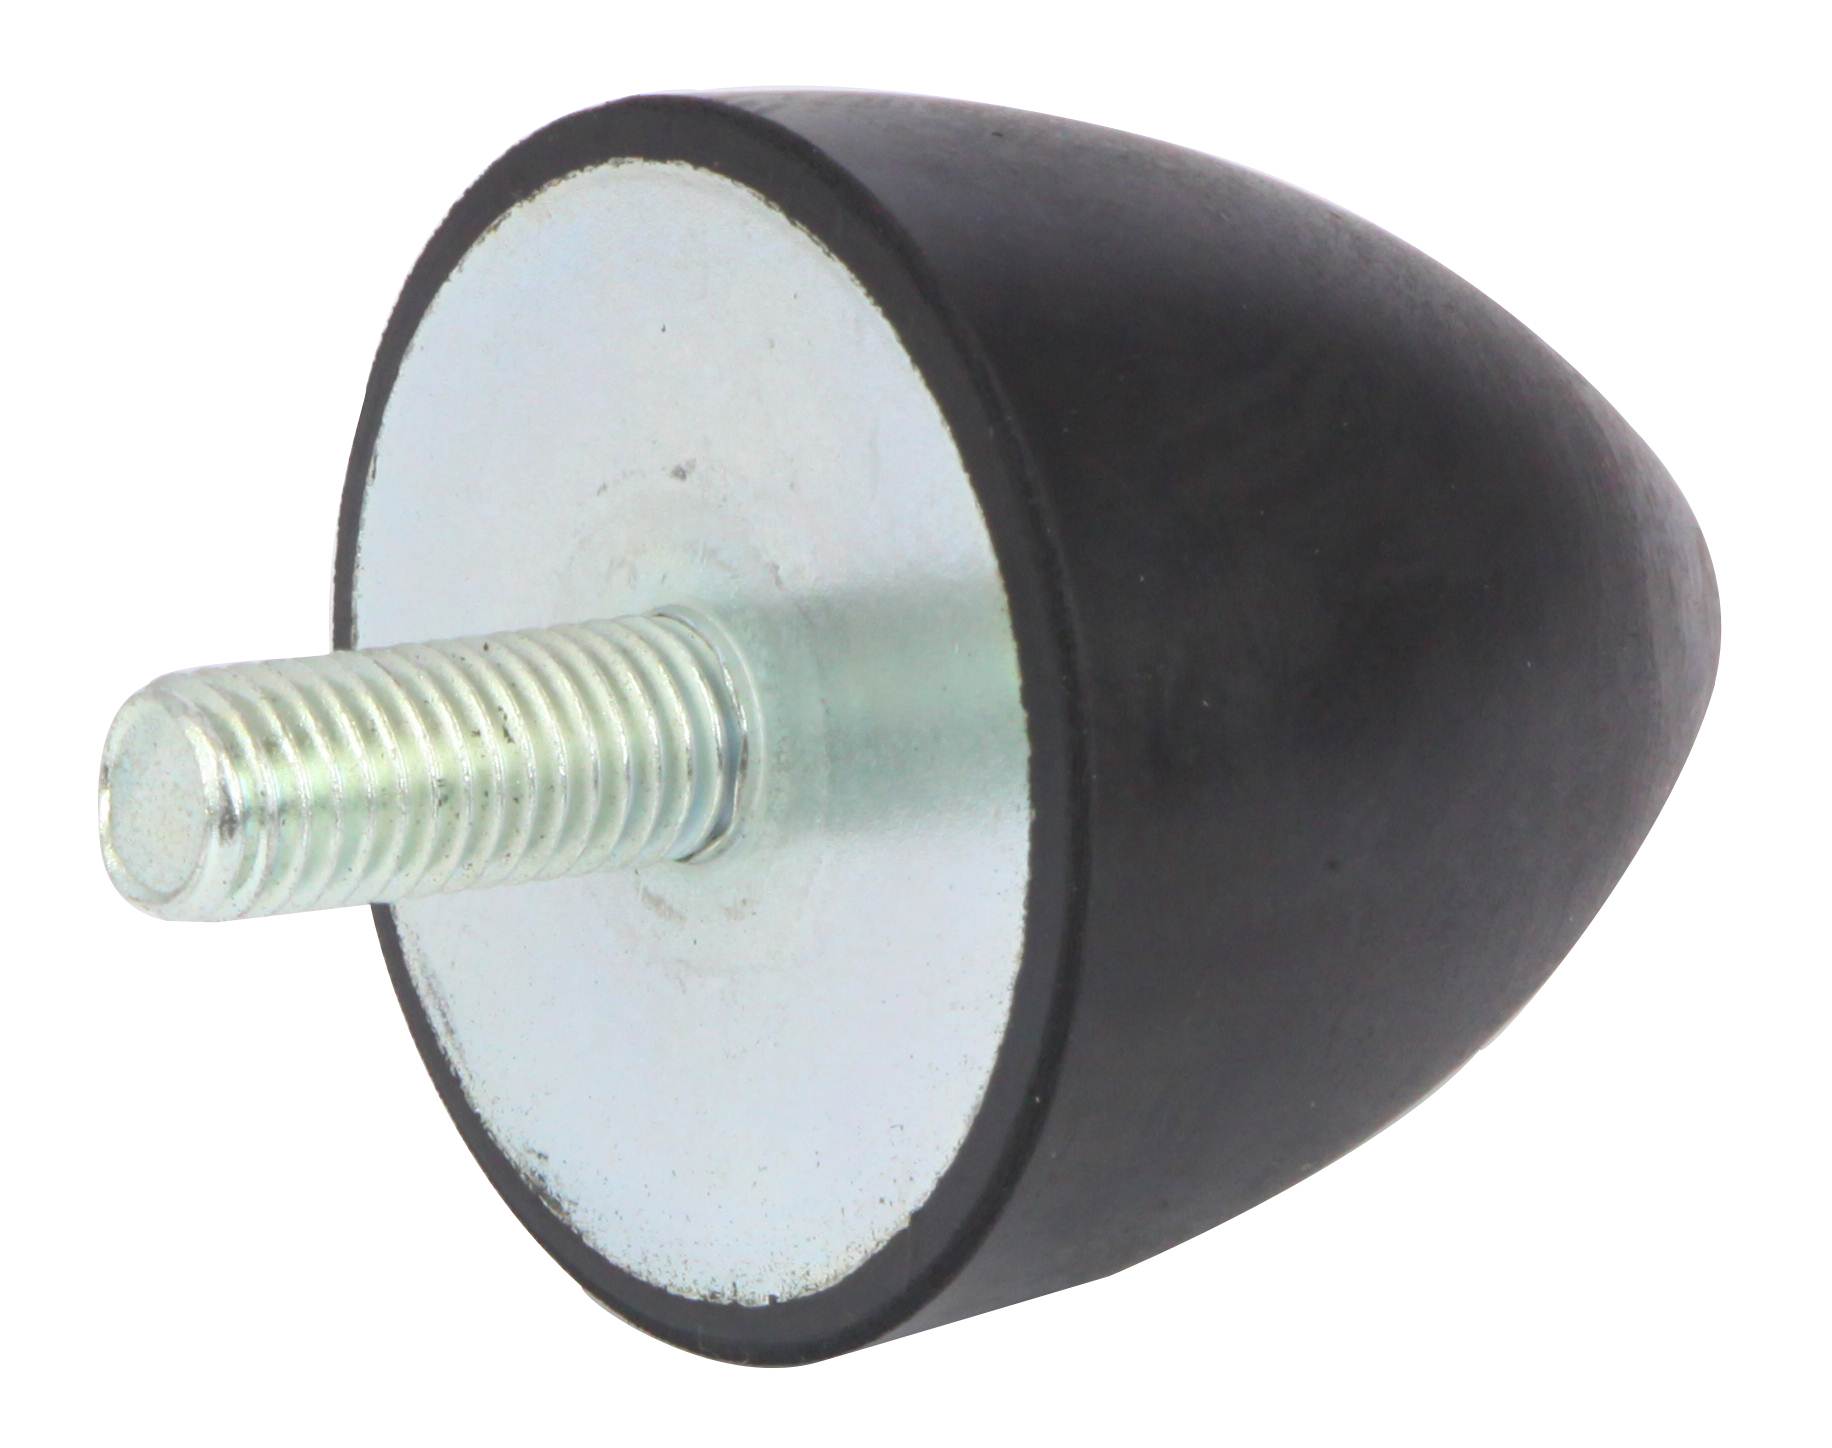 4Pcs Gummilager 25mm Durchmesser x 20mm L Male M8 Anti Vibration Exhaust Part 